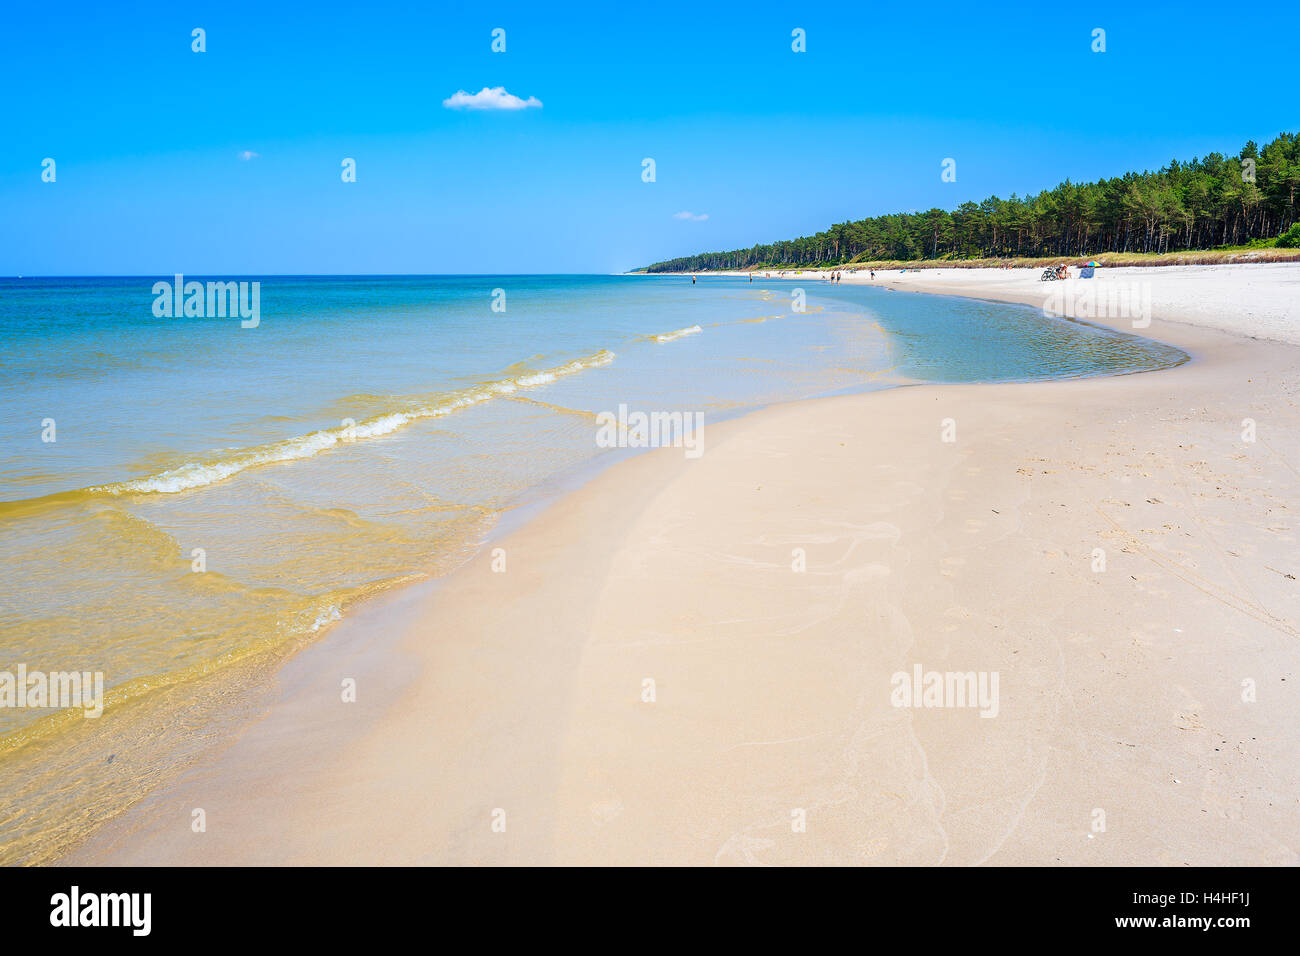 Sea waves on sandy beach in Lubiatowo coastal village, Baltic Sea, Poland Stock Photo